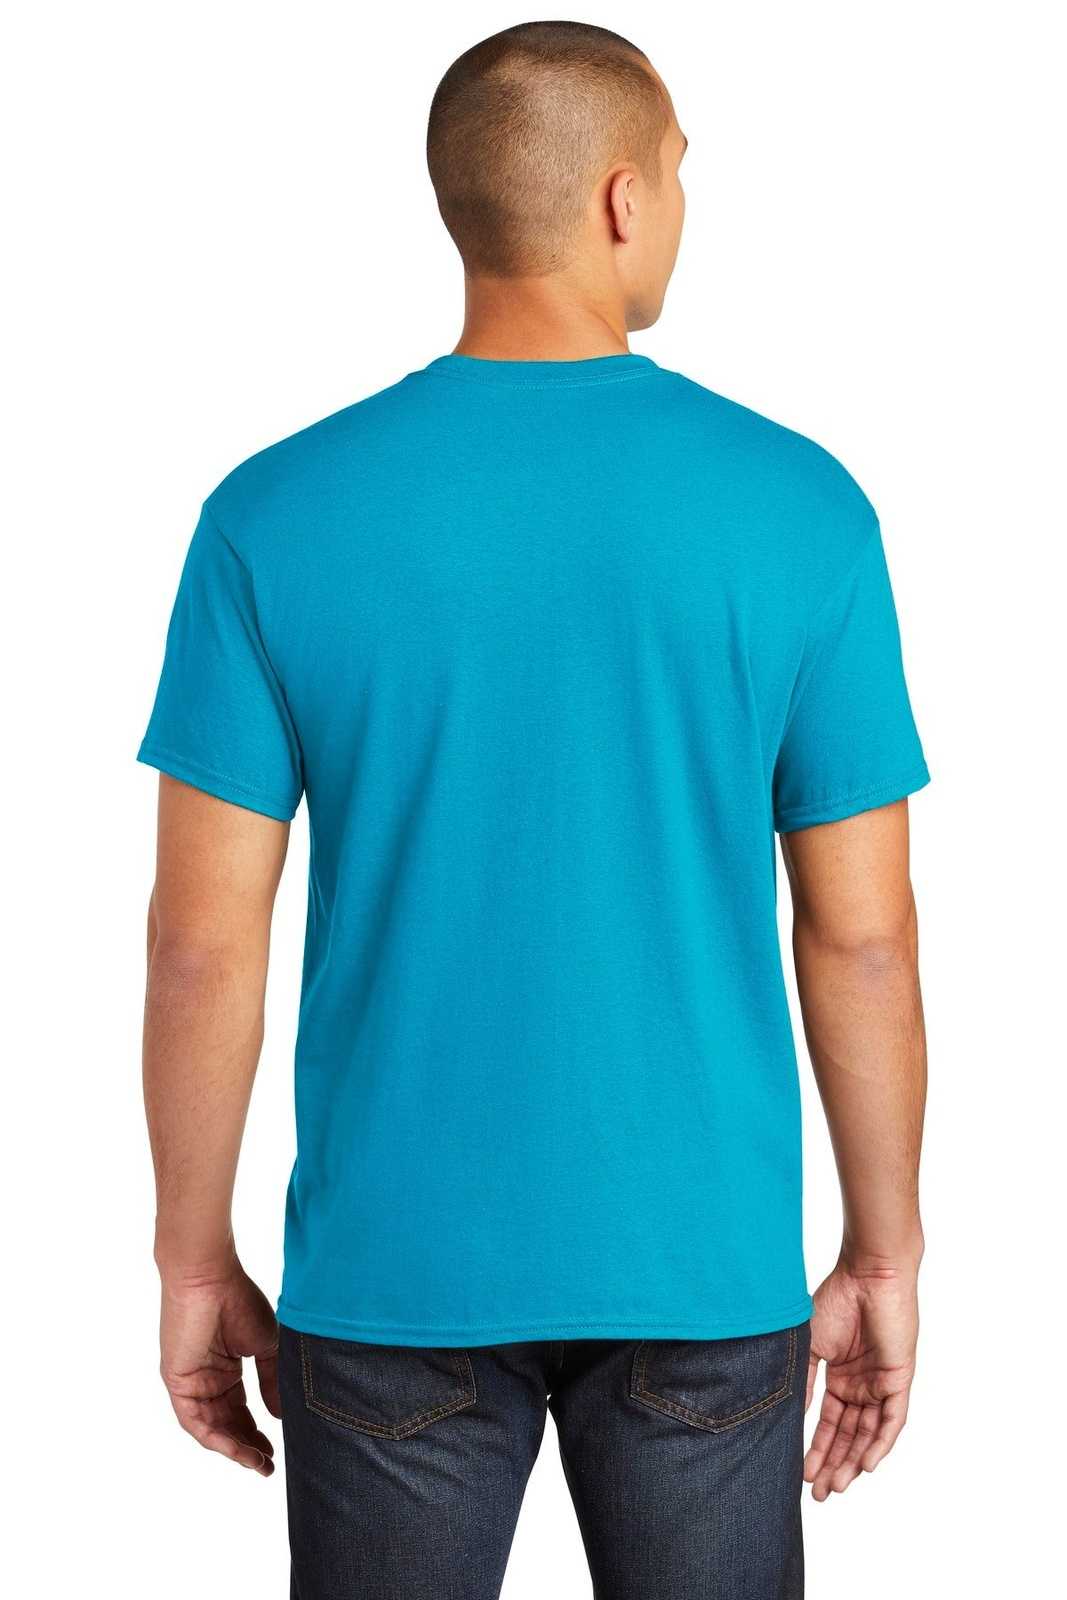 Gildan 5300 Heavy Cotton 100% Cotton Pocket T-Shirt - Sapphire - HIT a Double